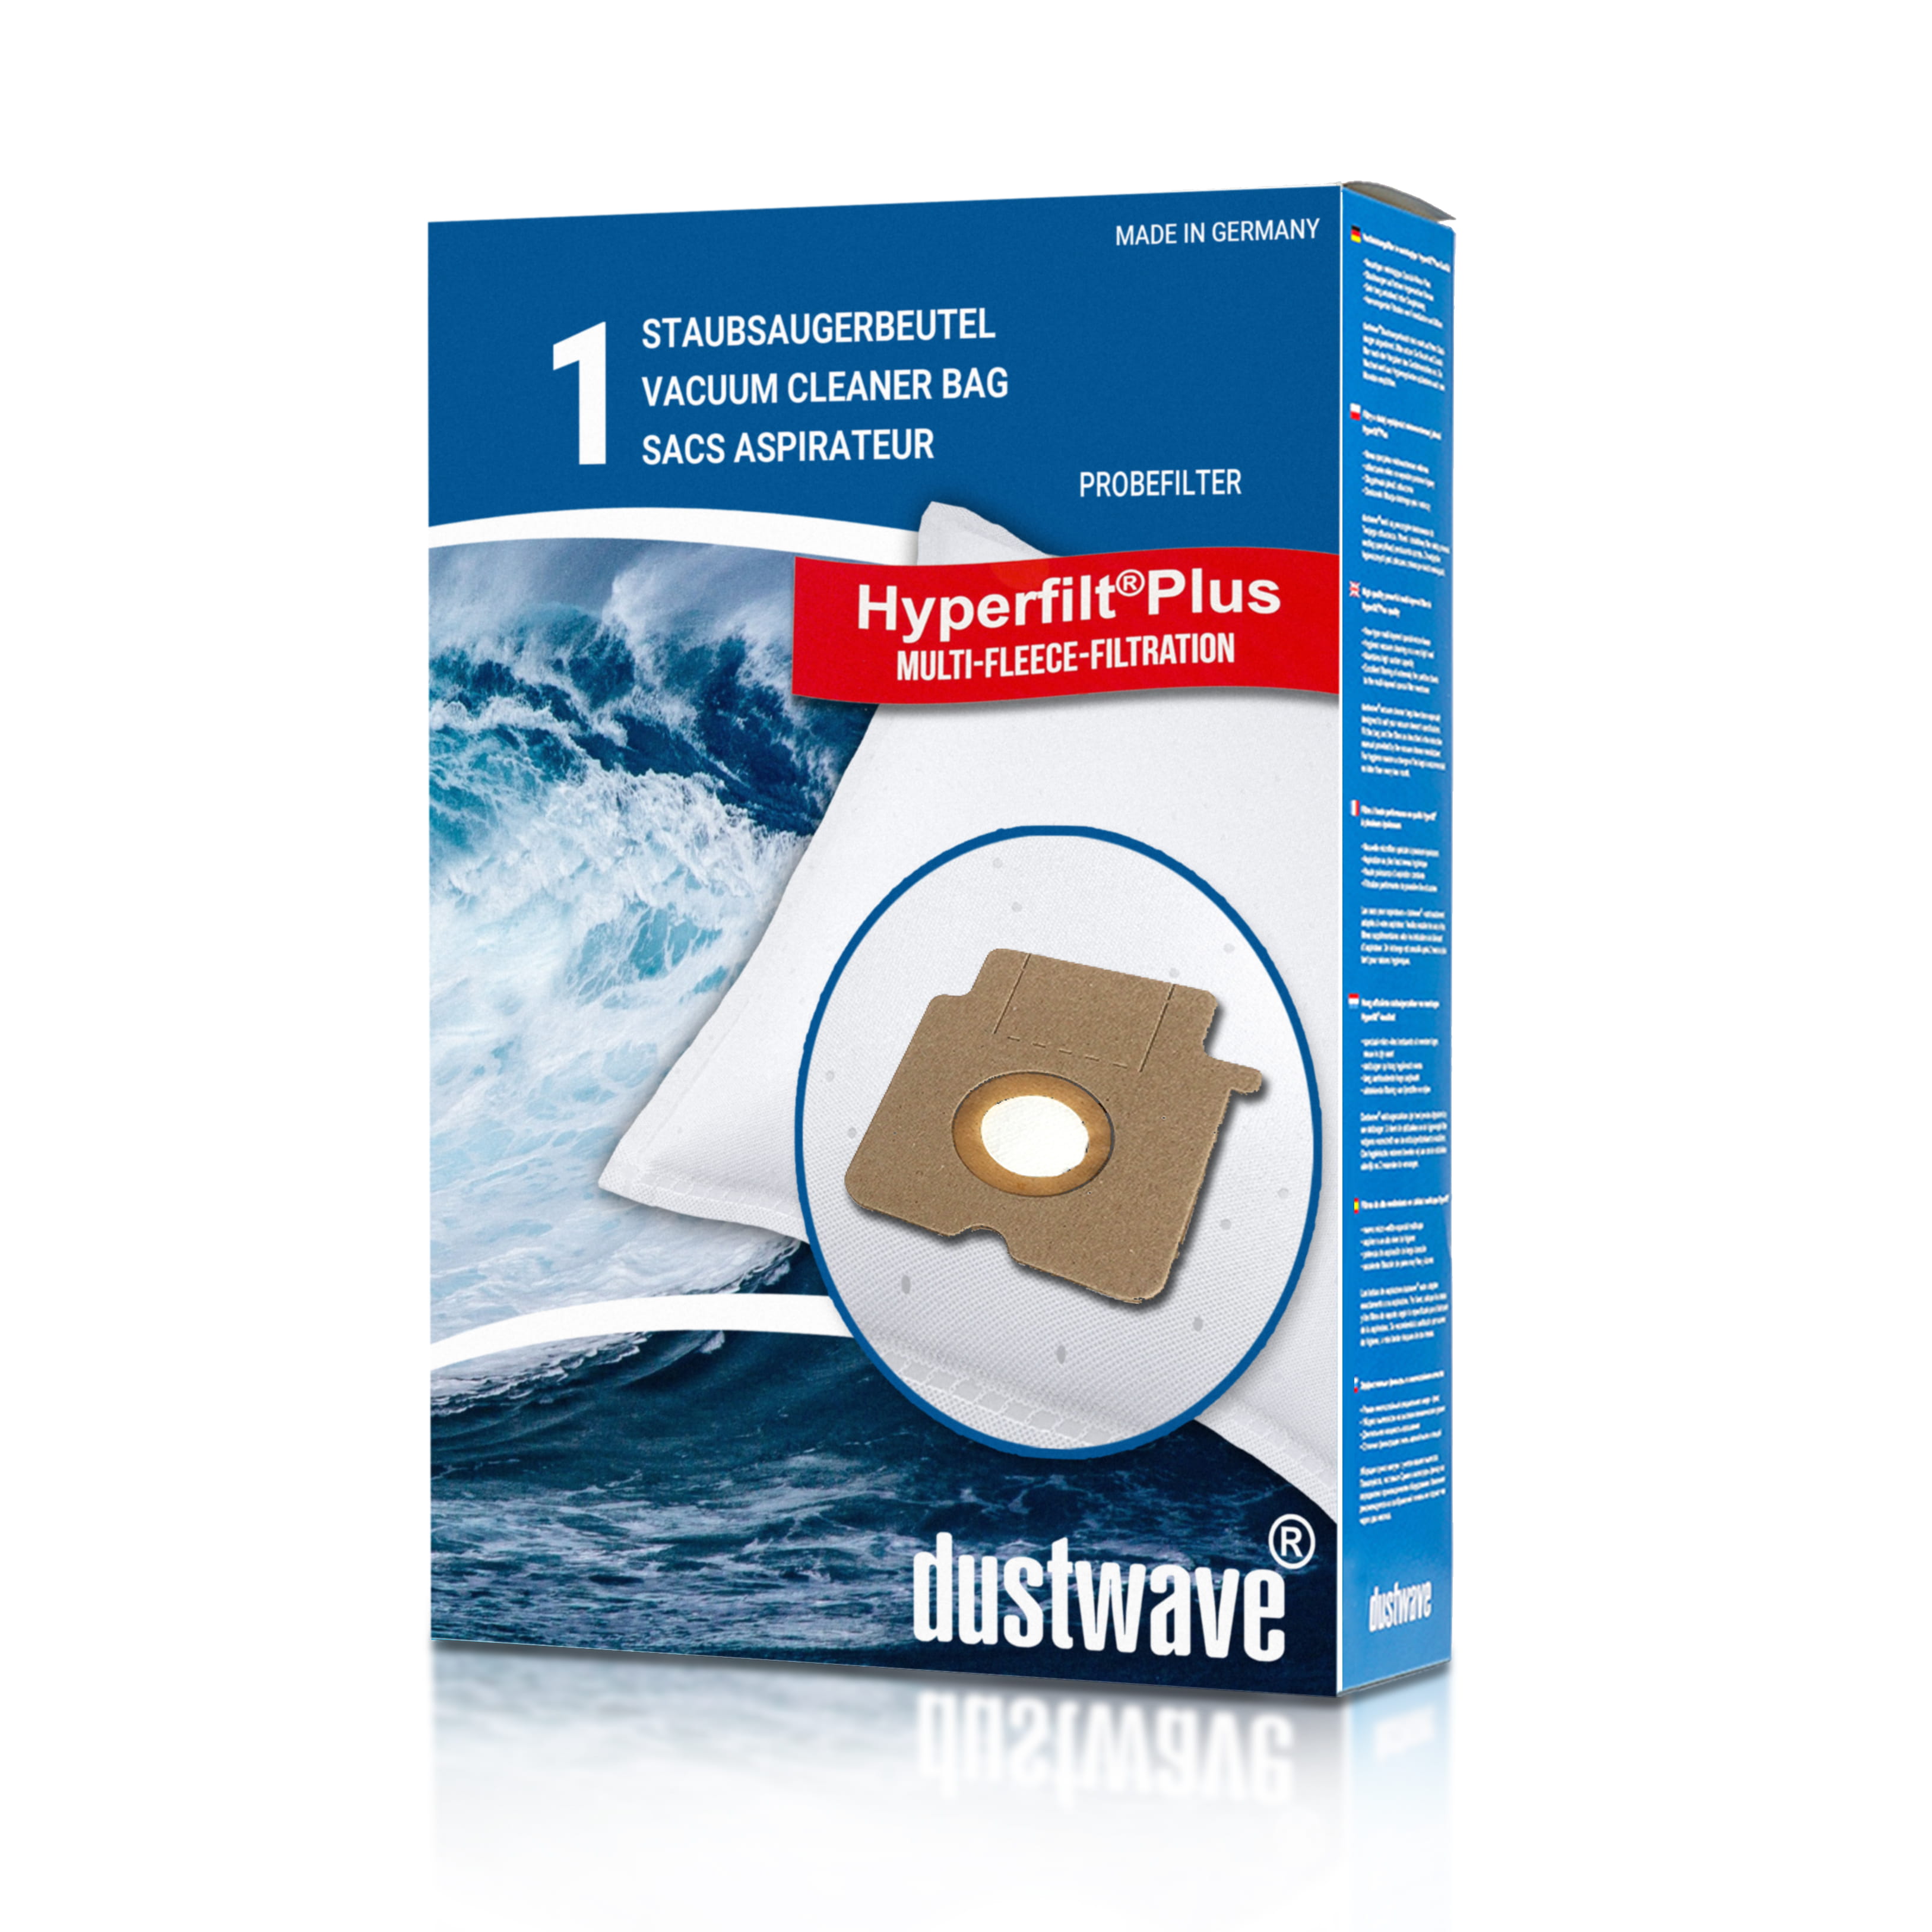 Dustwave® 1 Staubsaugerbeutel für Base BA 2702 - hocheffizient mit Hygieneverschluss - Made in Germany